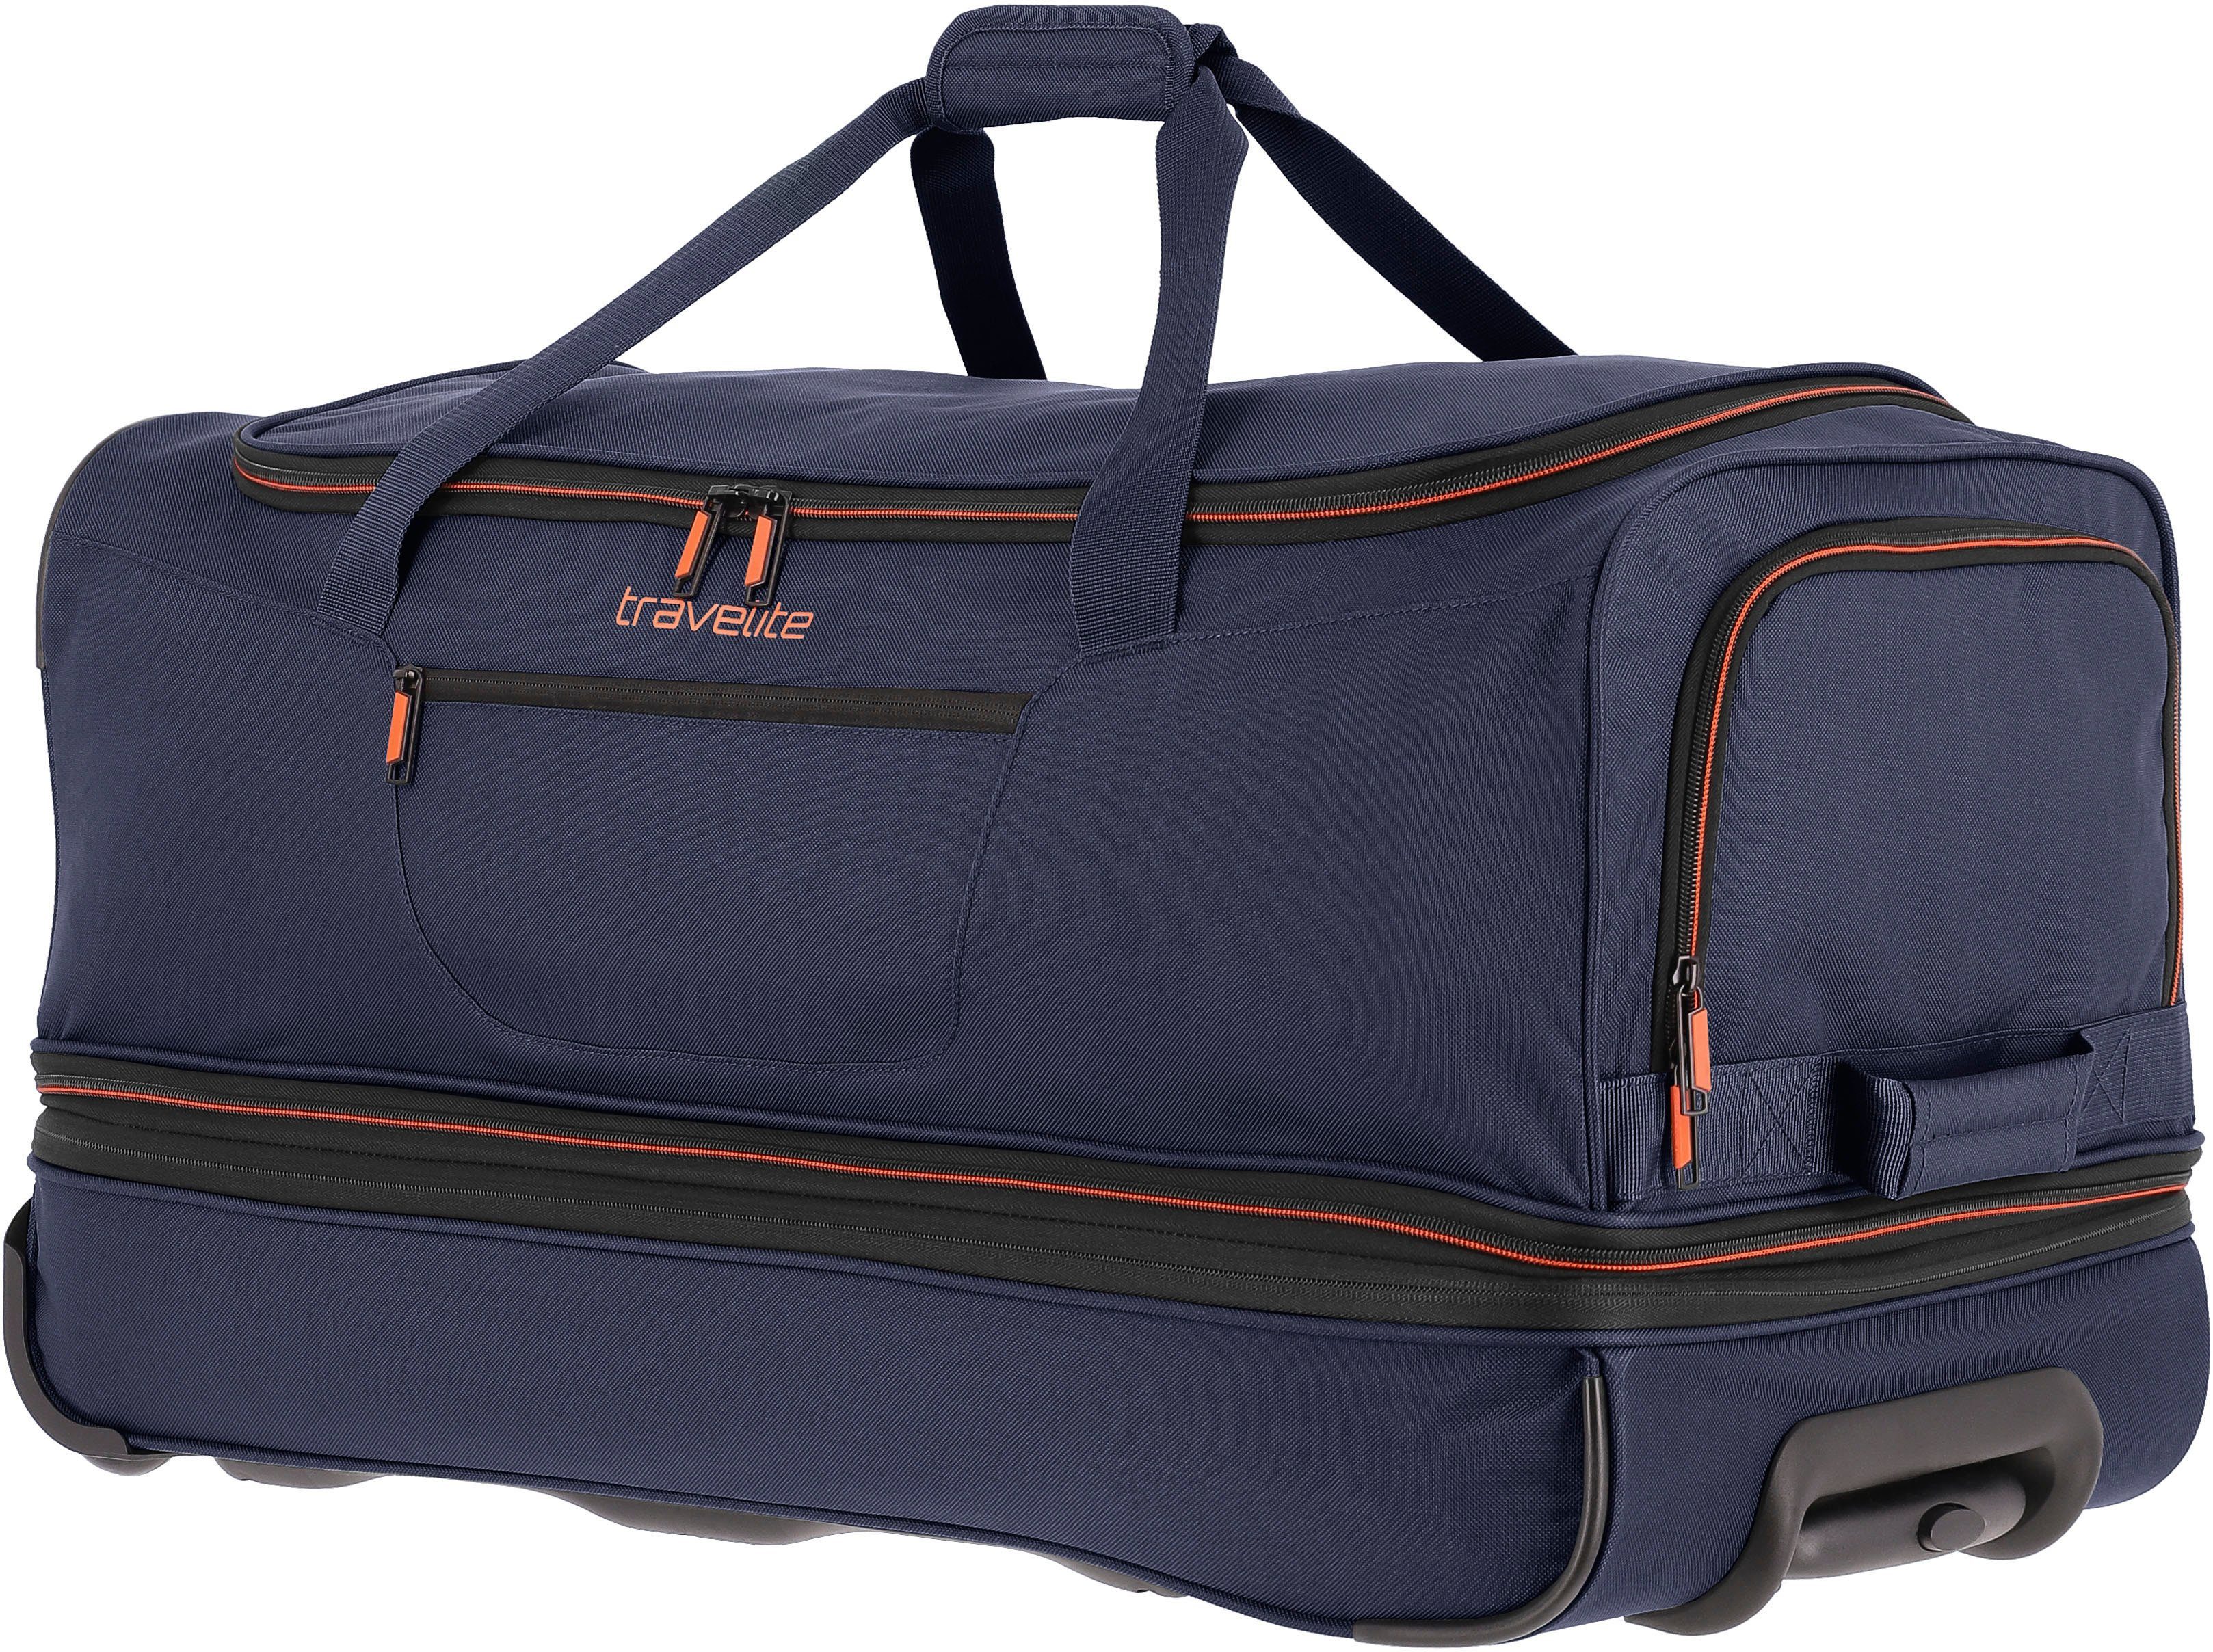 und Reisetasche marine-orange mit Trolleyfunktion Volumenerweiterung cm, 70 Basics, travelite